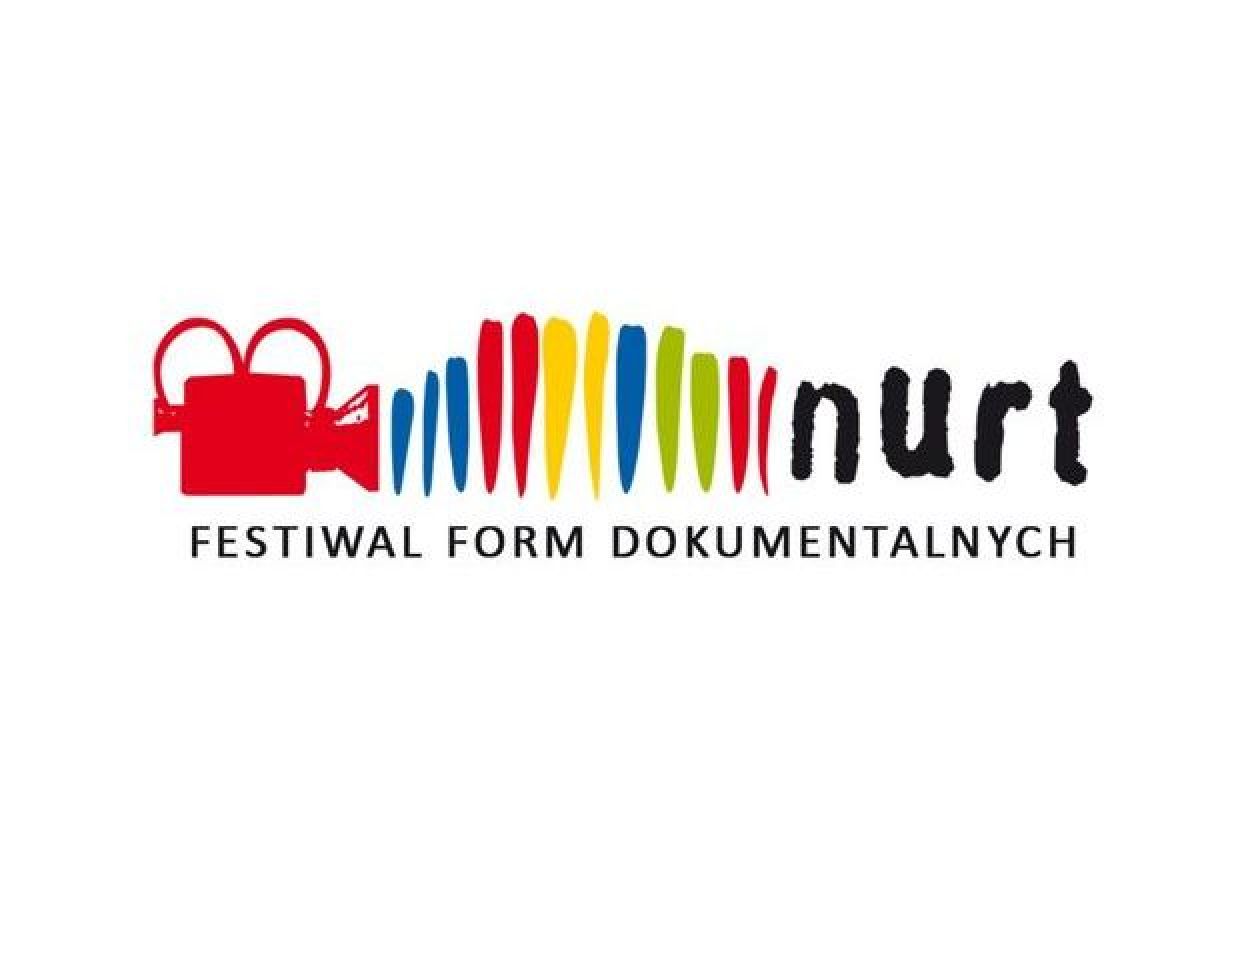  XXIX Festiwal Filmów Dokumentalnych Nurt z ministerialnym dofinansowaniem 